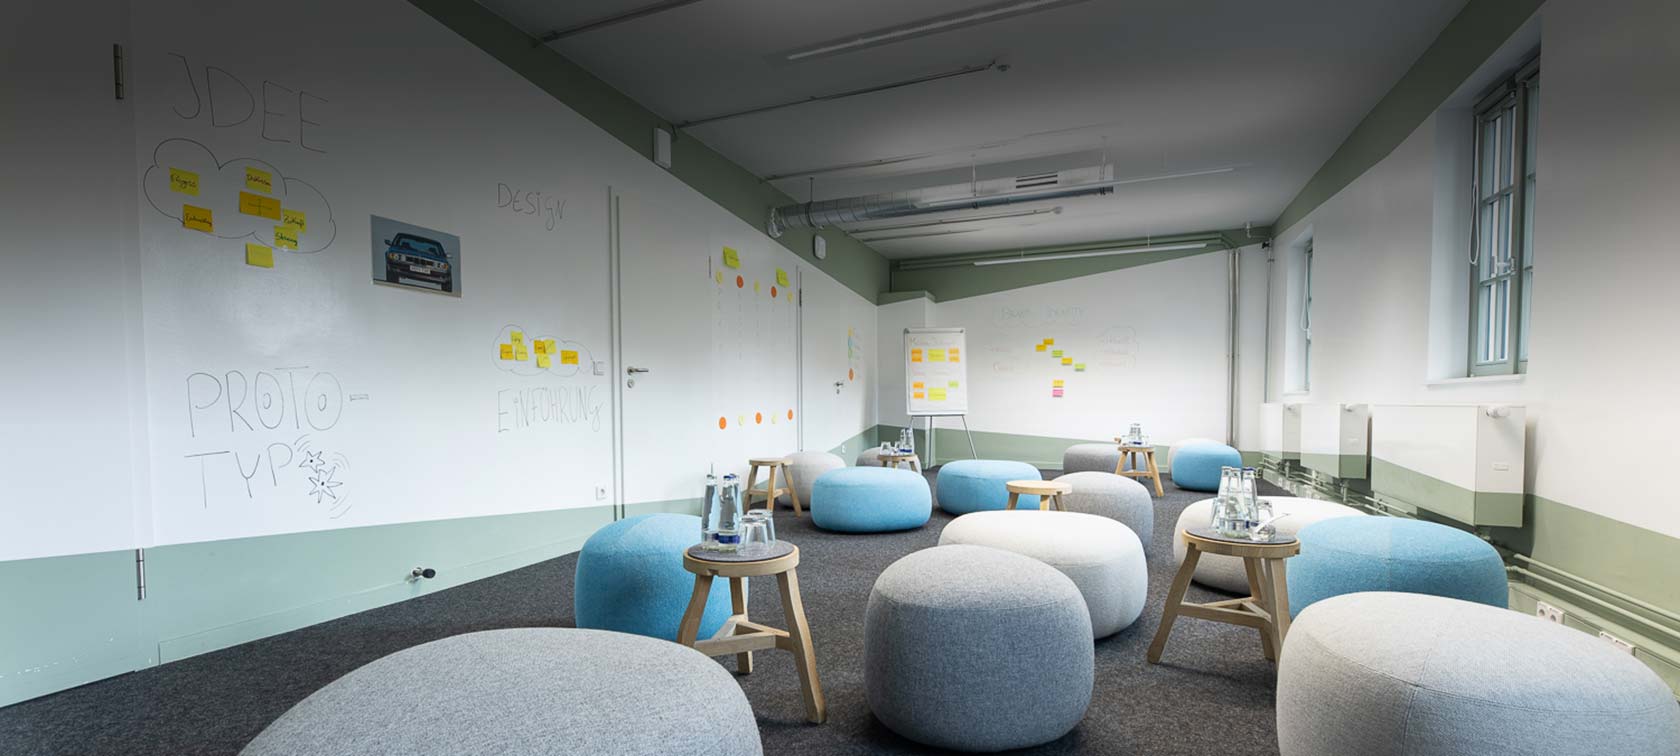 Workshopraum der BMW Group Classic mit Sitzmöbeln und Whiteboards für kreatives Arbeiten